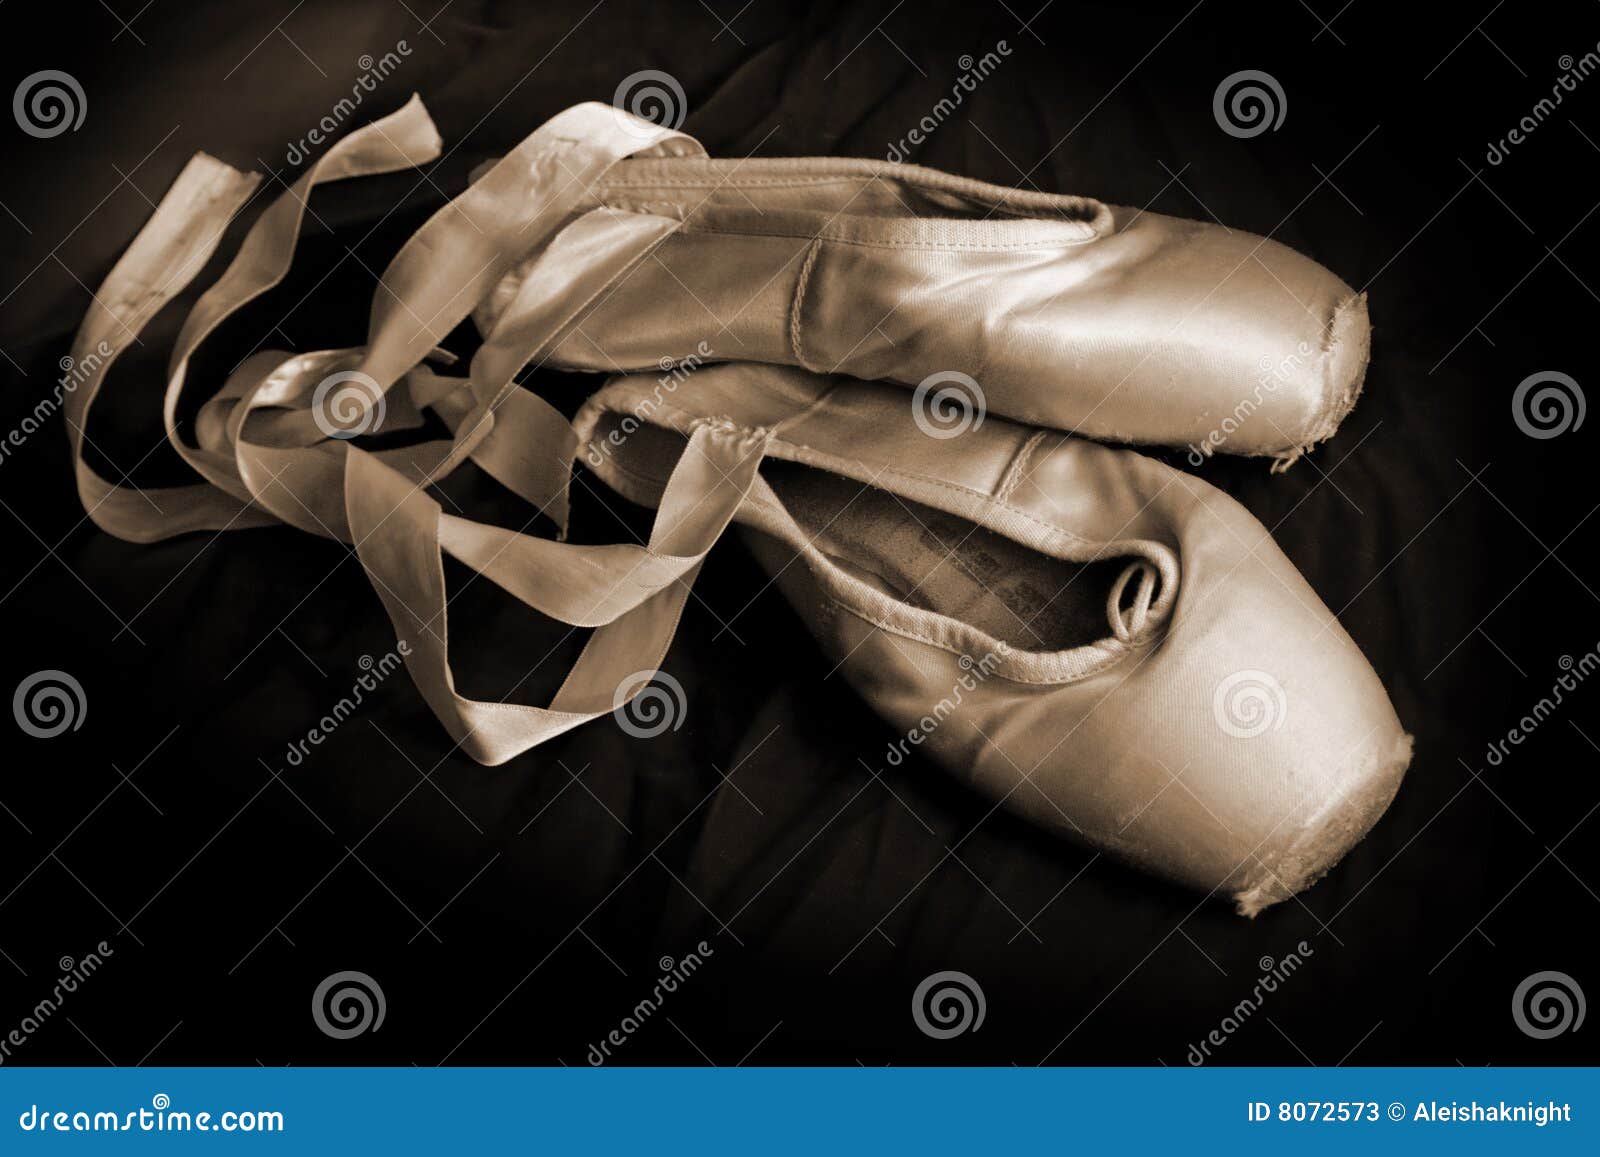 Chaussures usÃ©es de pointe de ballet sur un fond foncÃ©. (SÃ©pia).